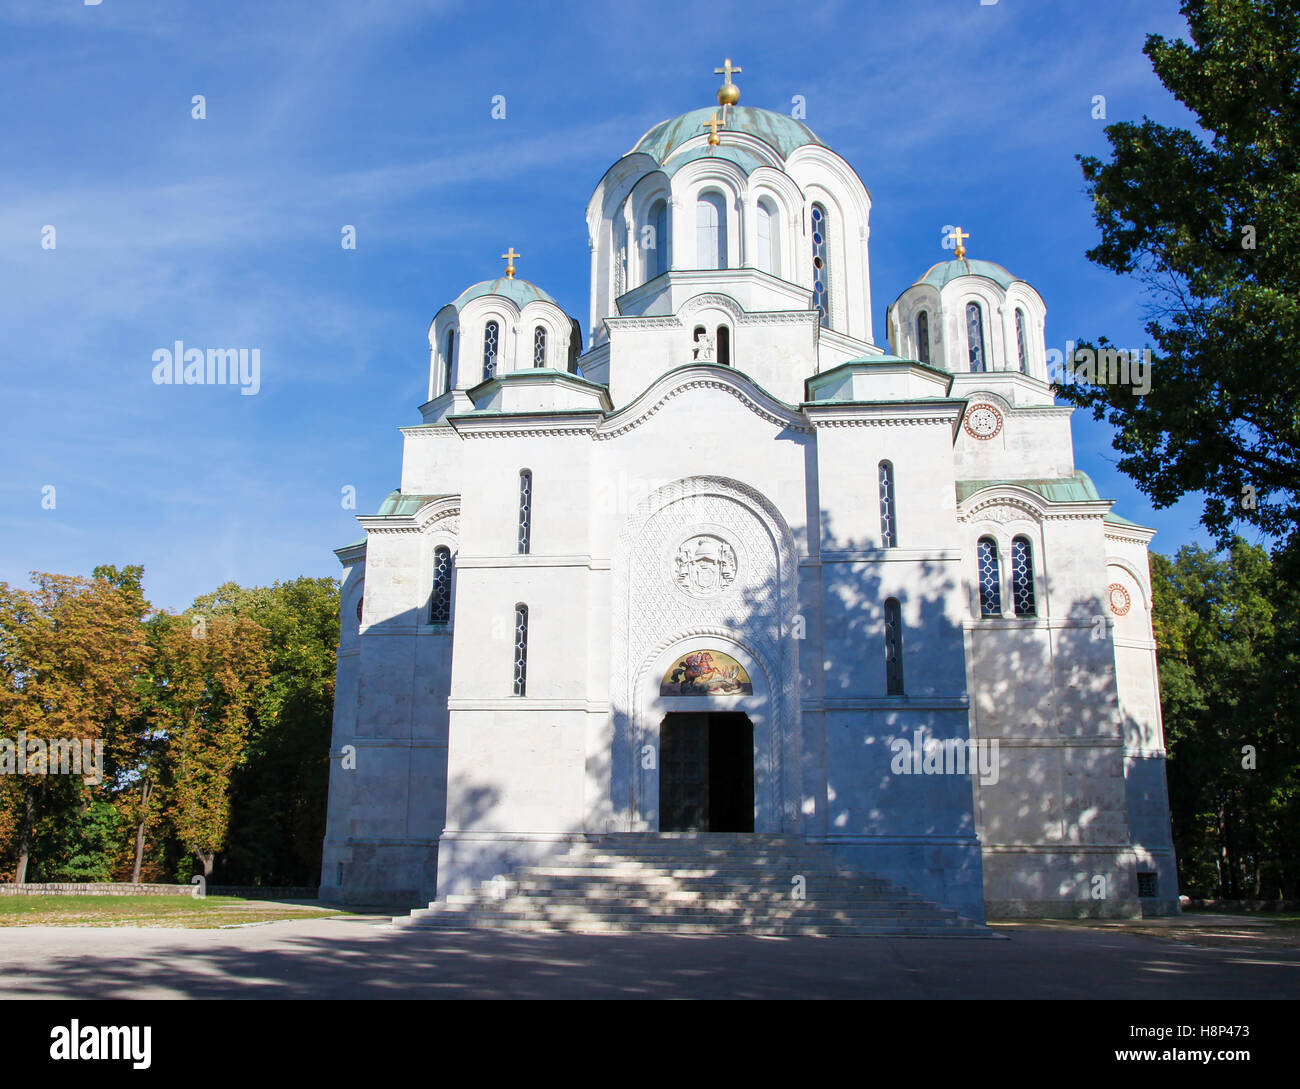 Die Kirche des Heiligen Sava ist eine serbisch-orthodoxe Kirche liegt auf der Hochebene Vracar in Belgrad. Es ist eines der größten Orthod Stockfoto